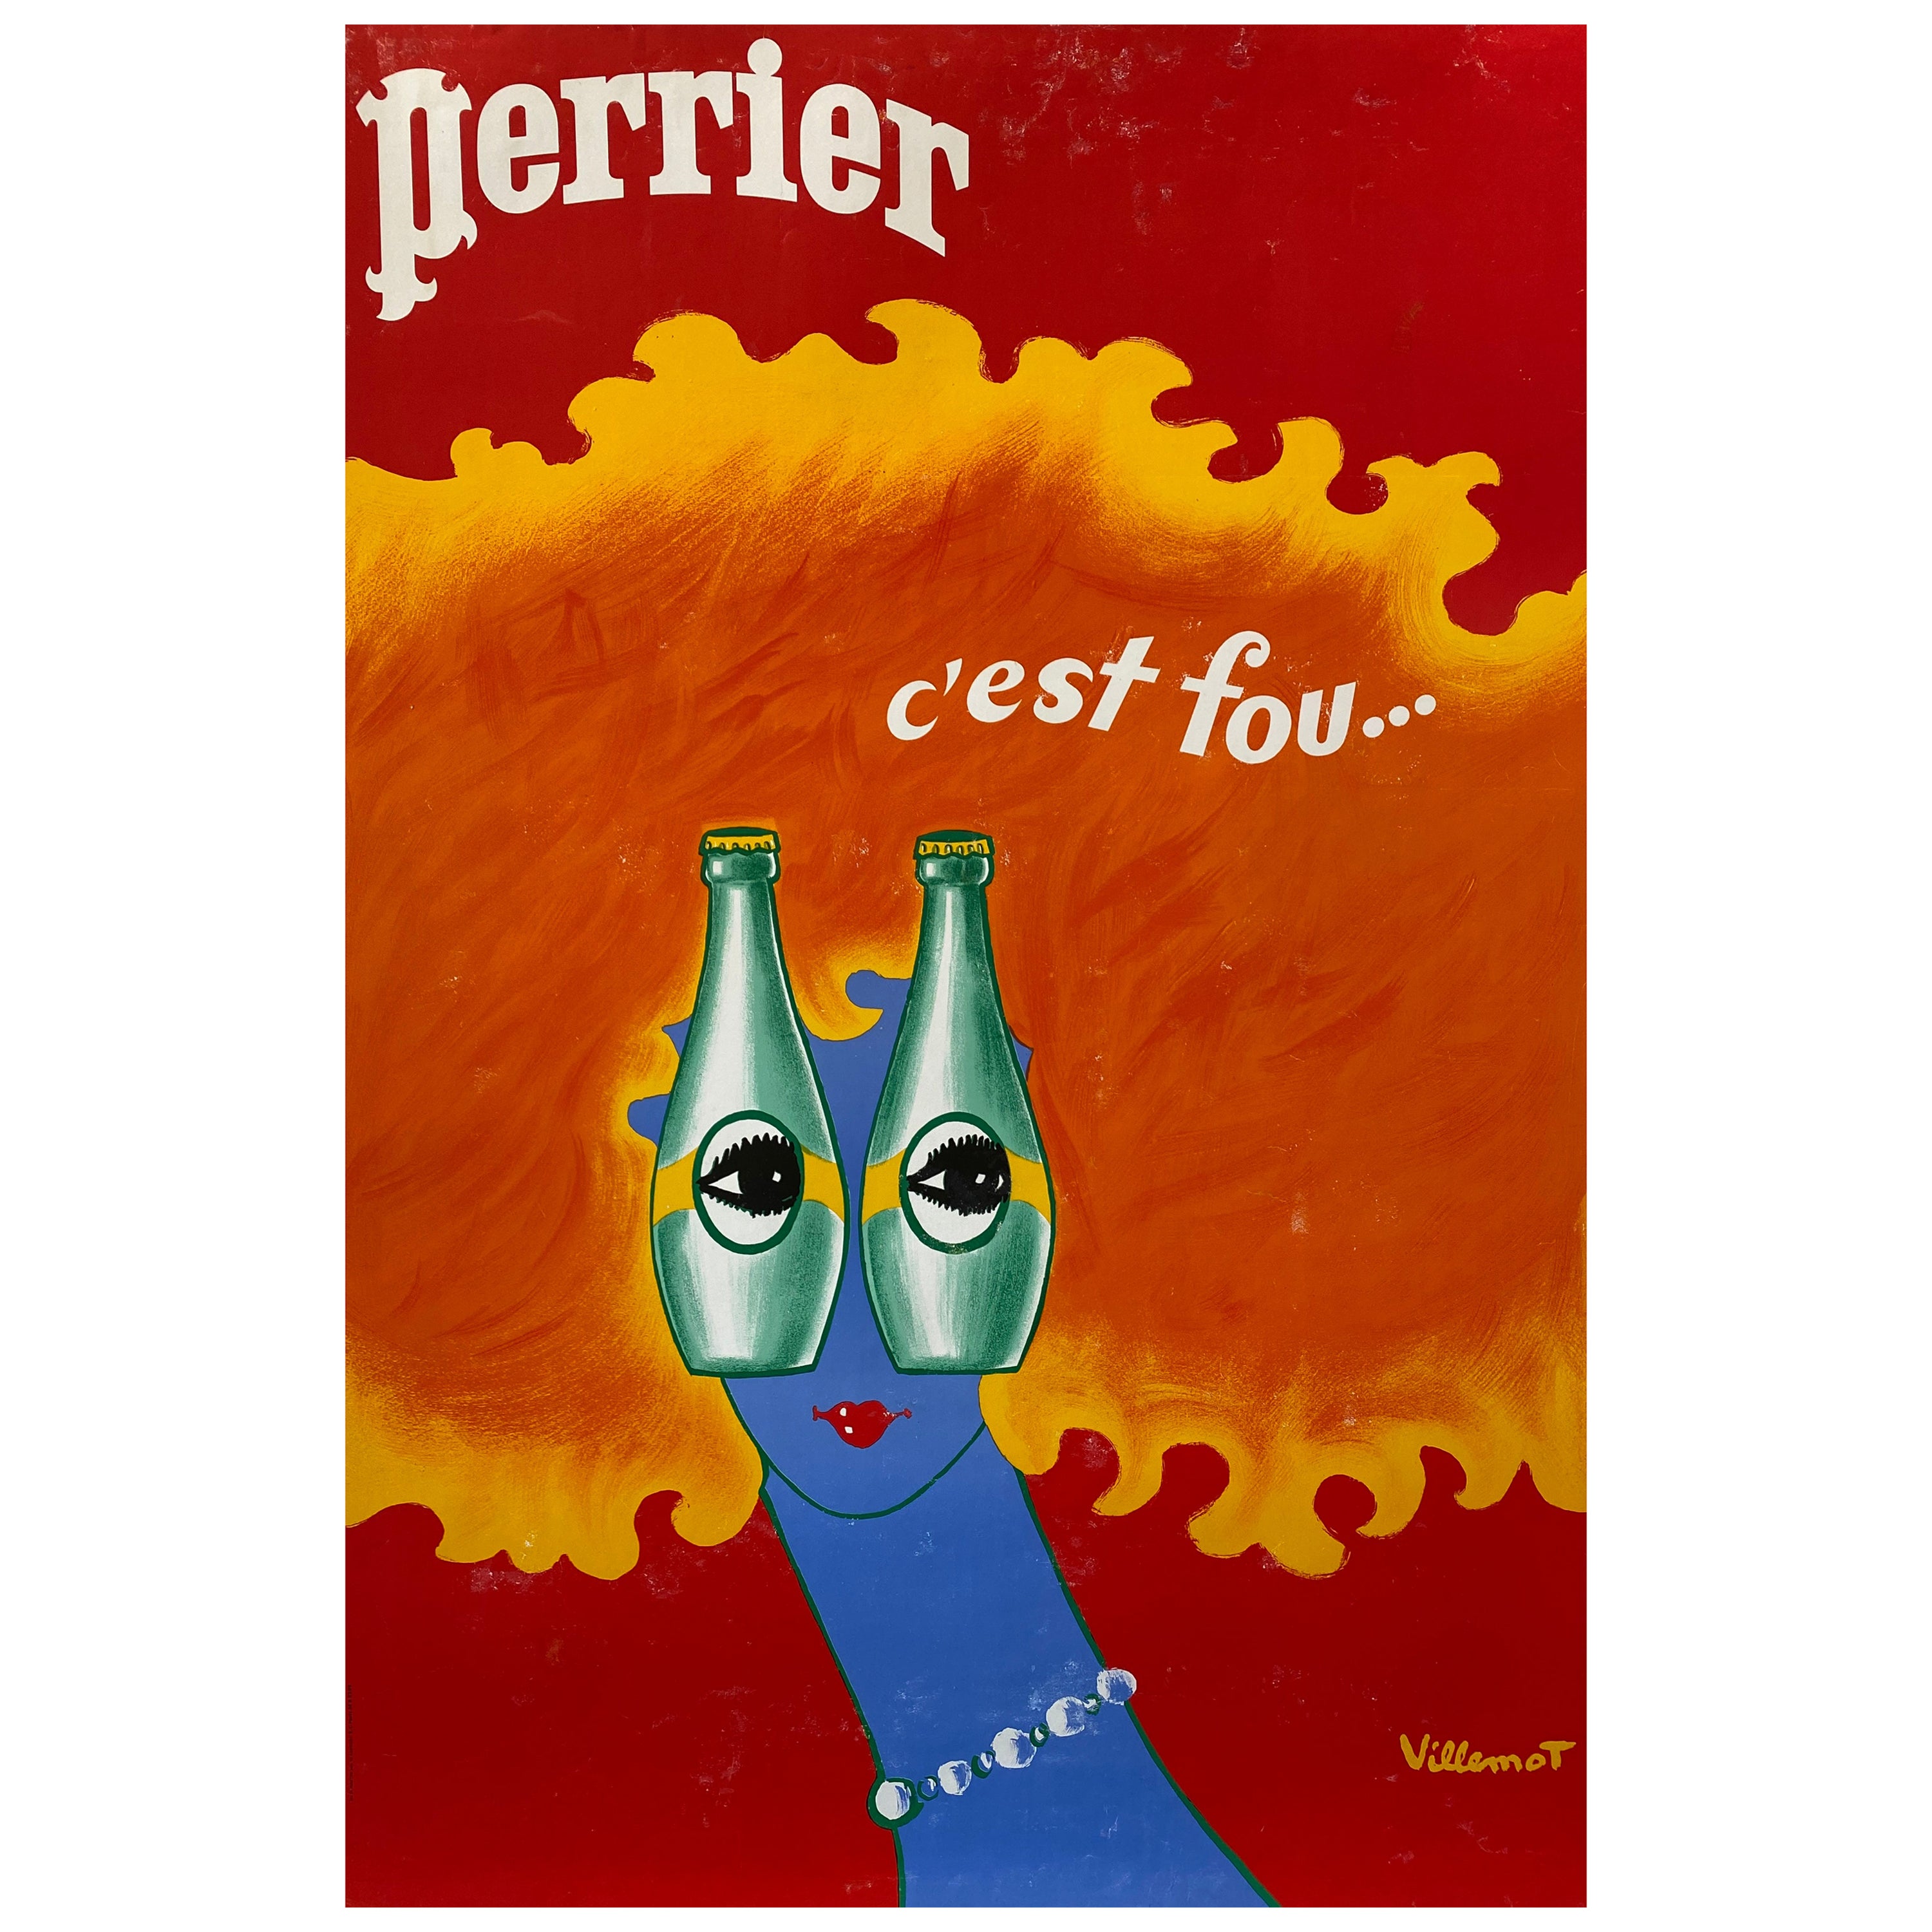 Original Vintage French Advertising Poster, 'Perrier c'est fou...' by Villemot 